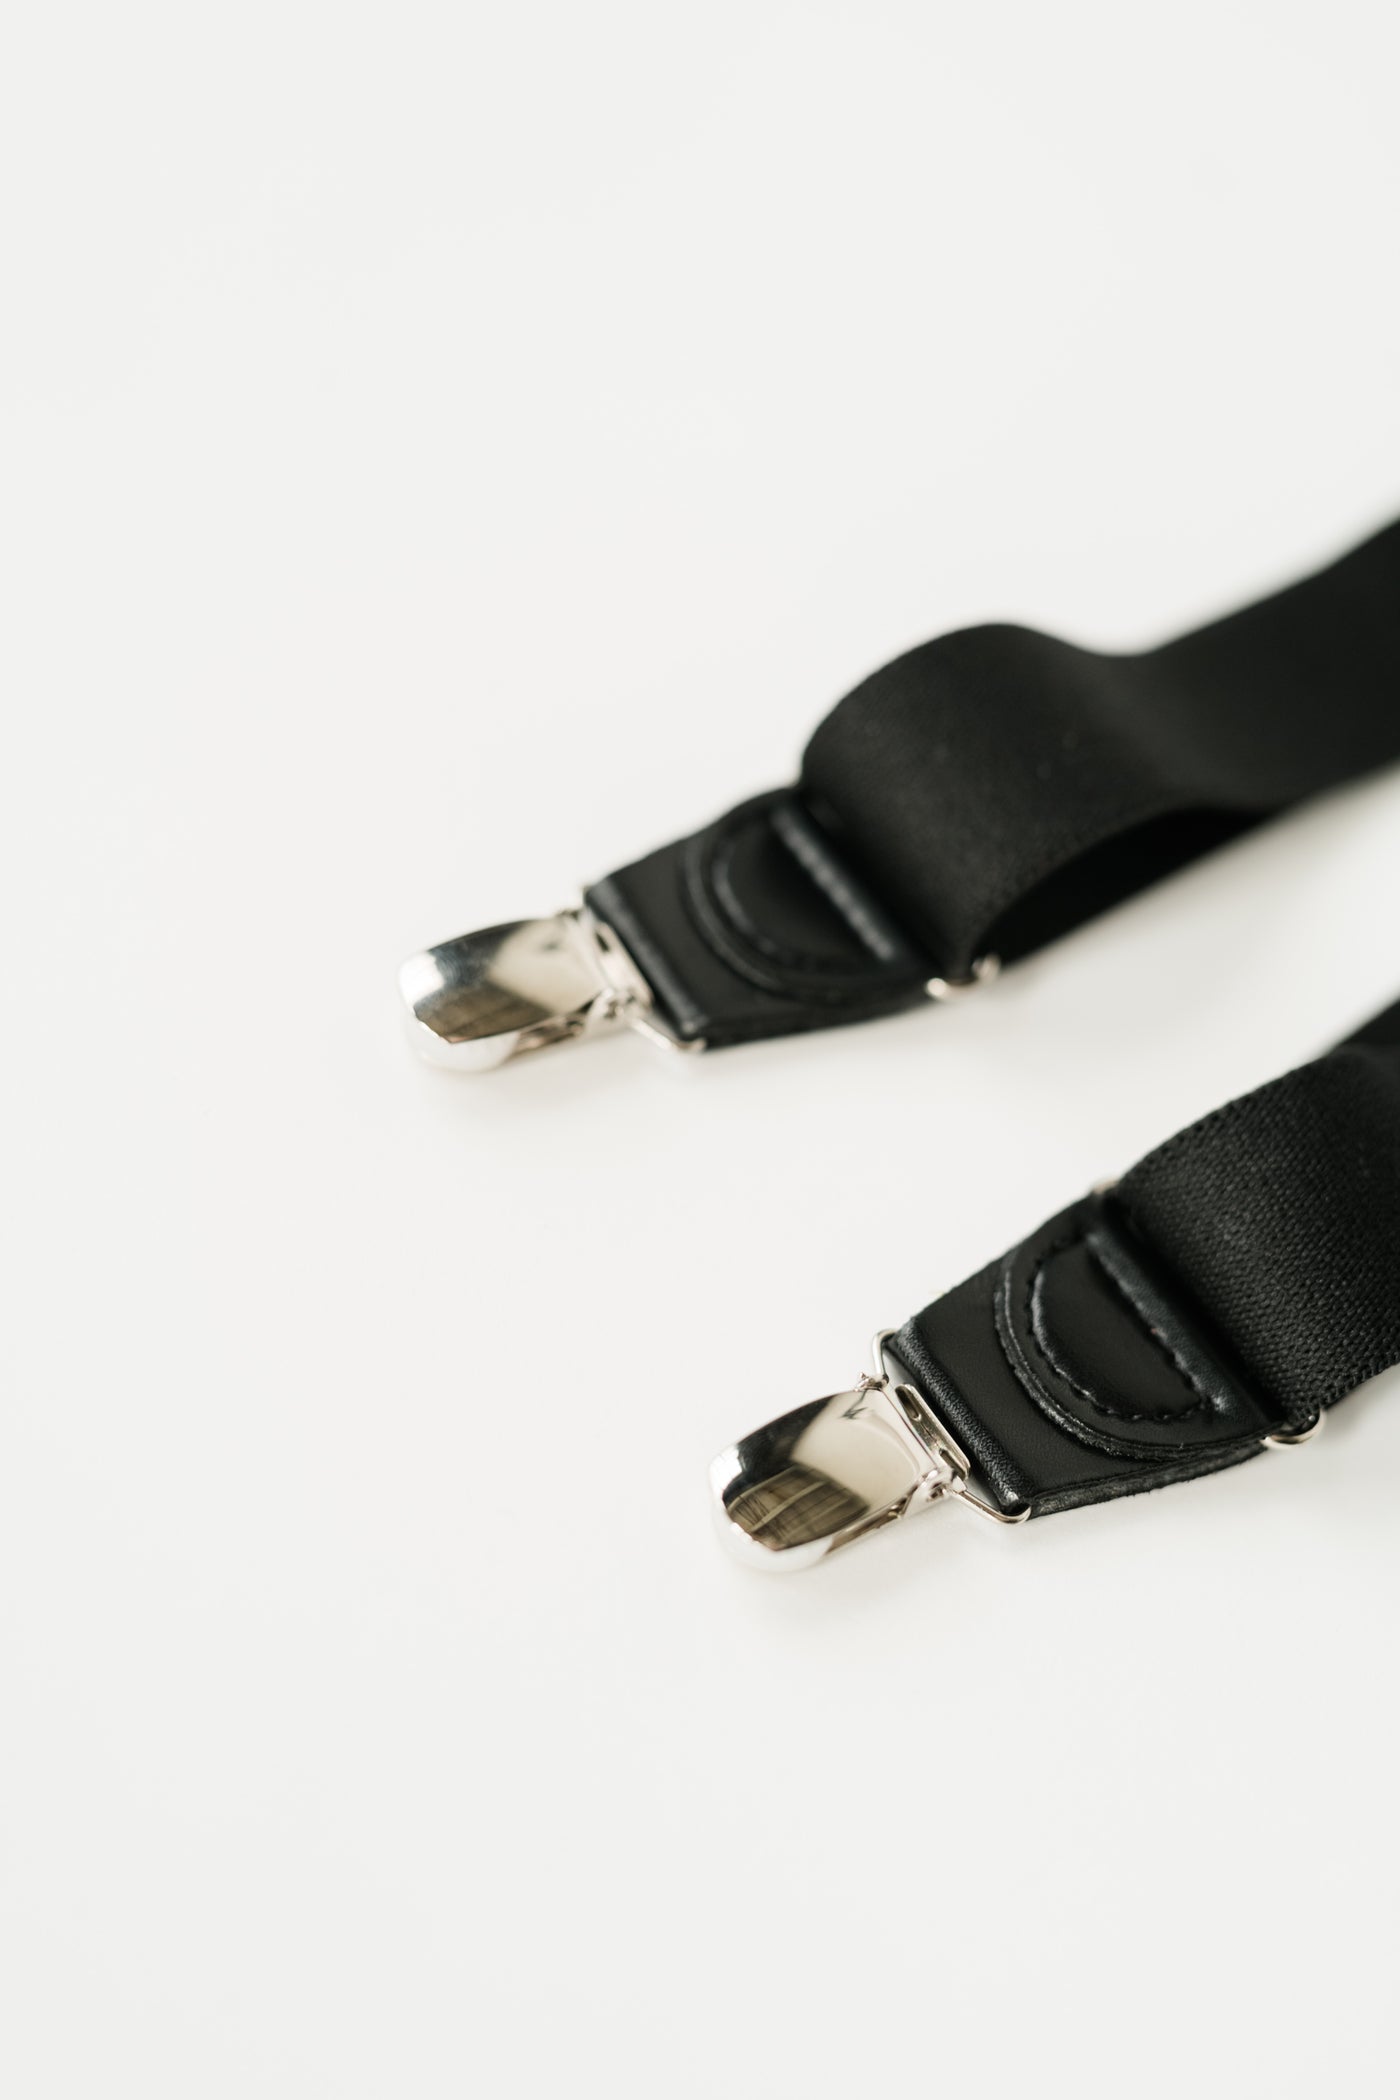 silver metal suspender clips